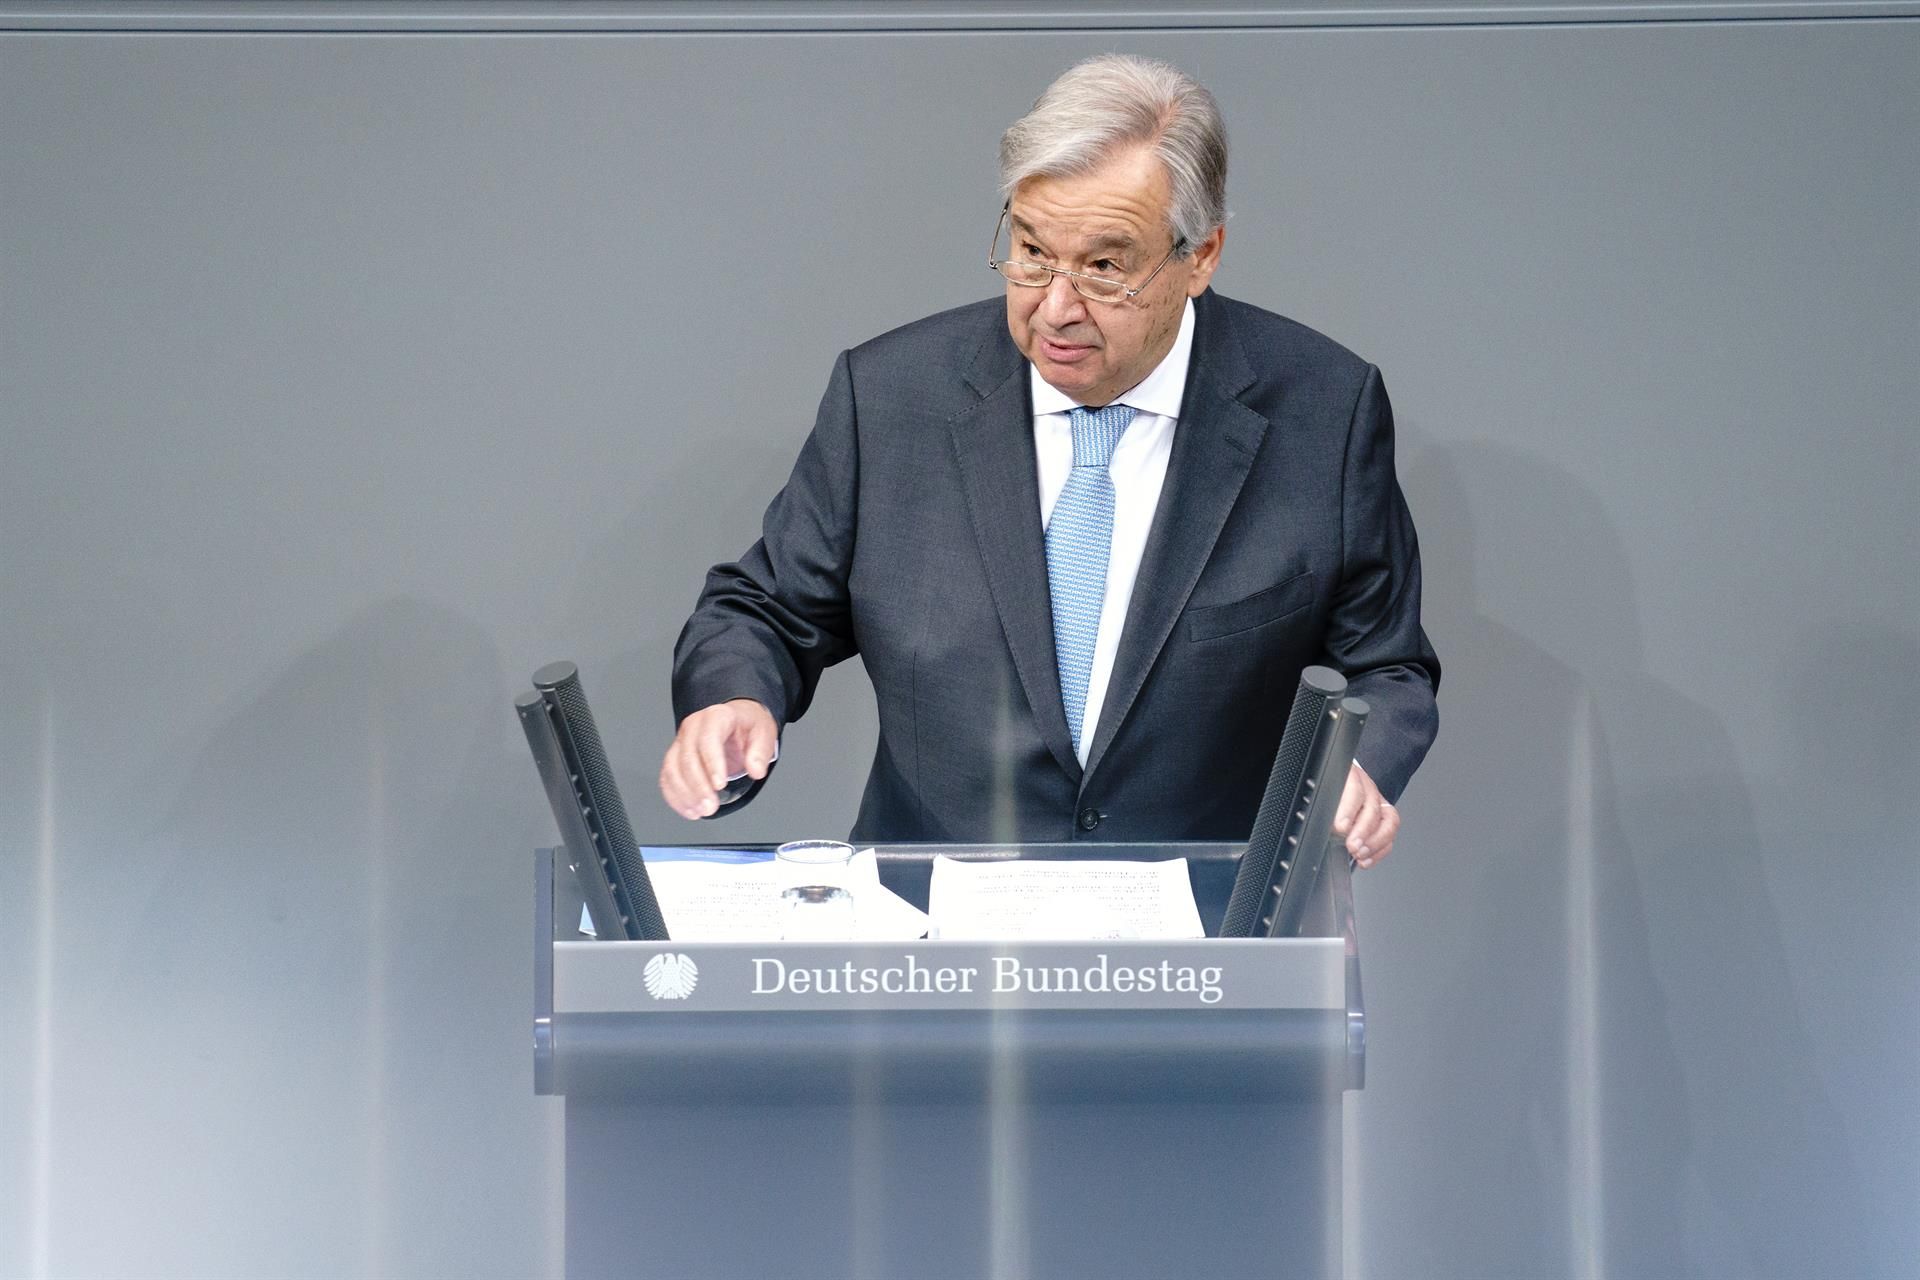 El secretario general de Naciones Unidas, António Guterres, apelado a la crisis climática, en su mensaje de fin de año  / Foto: EP